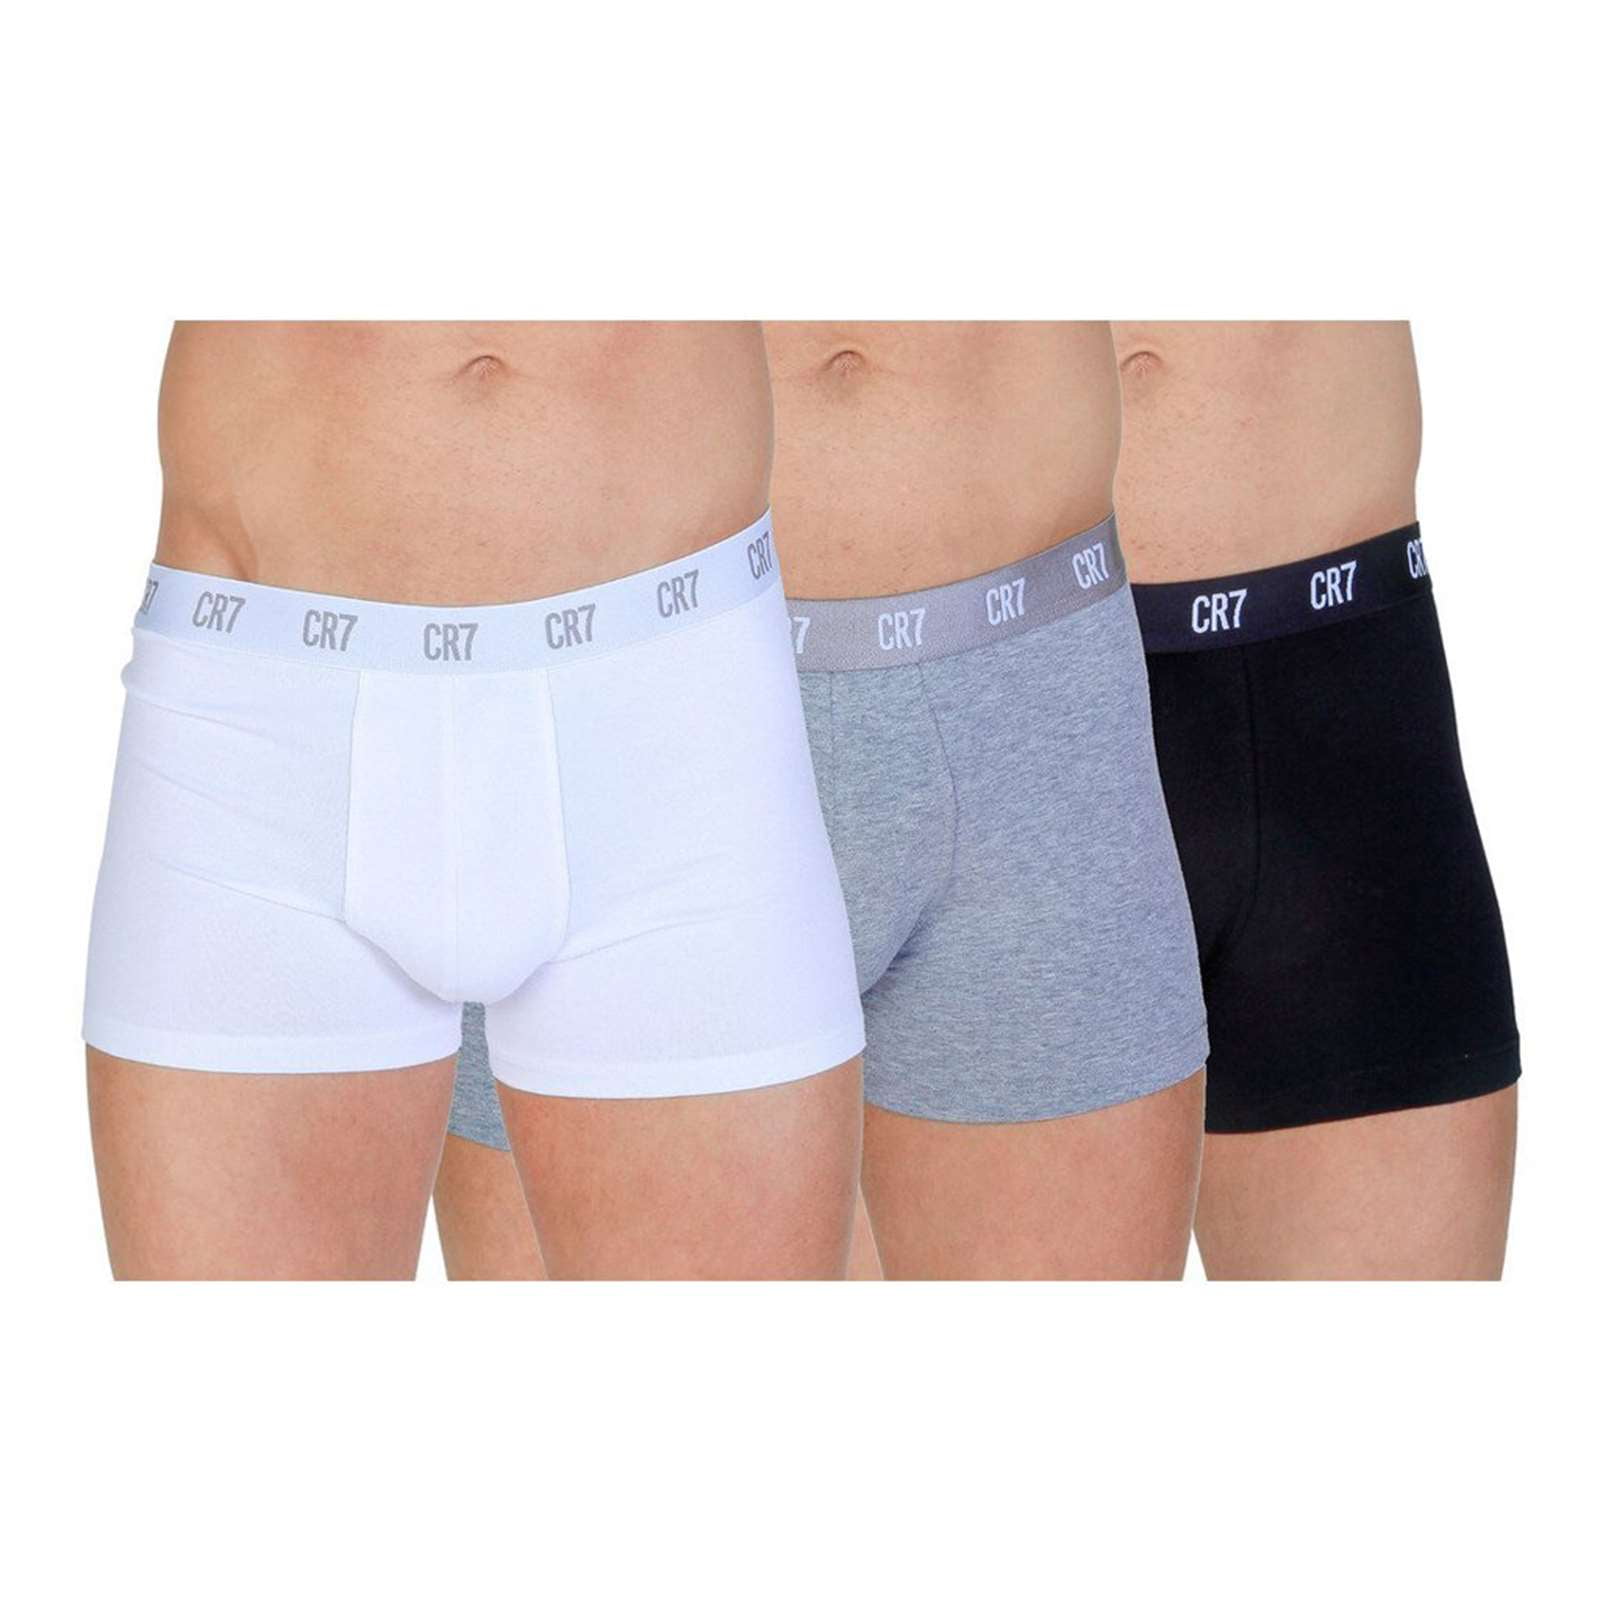 NEW Cristiano Ronaldo CR7 Men's Underwear 3-Pack Trunk Cotton Stretch Boxers  